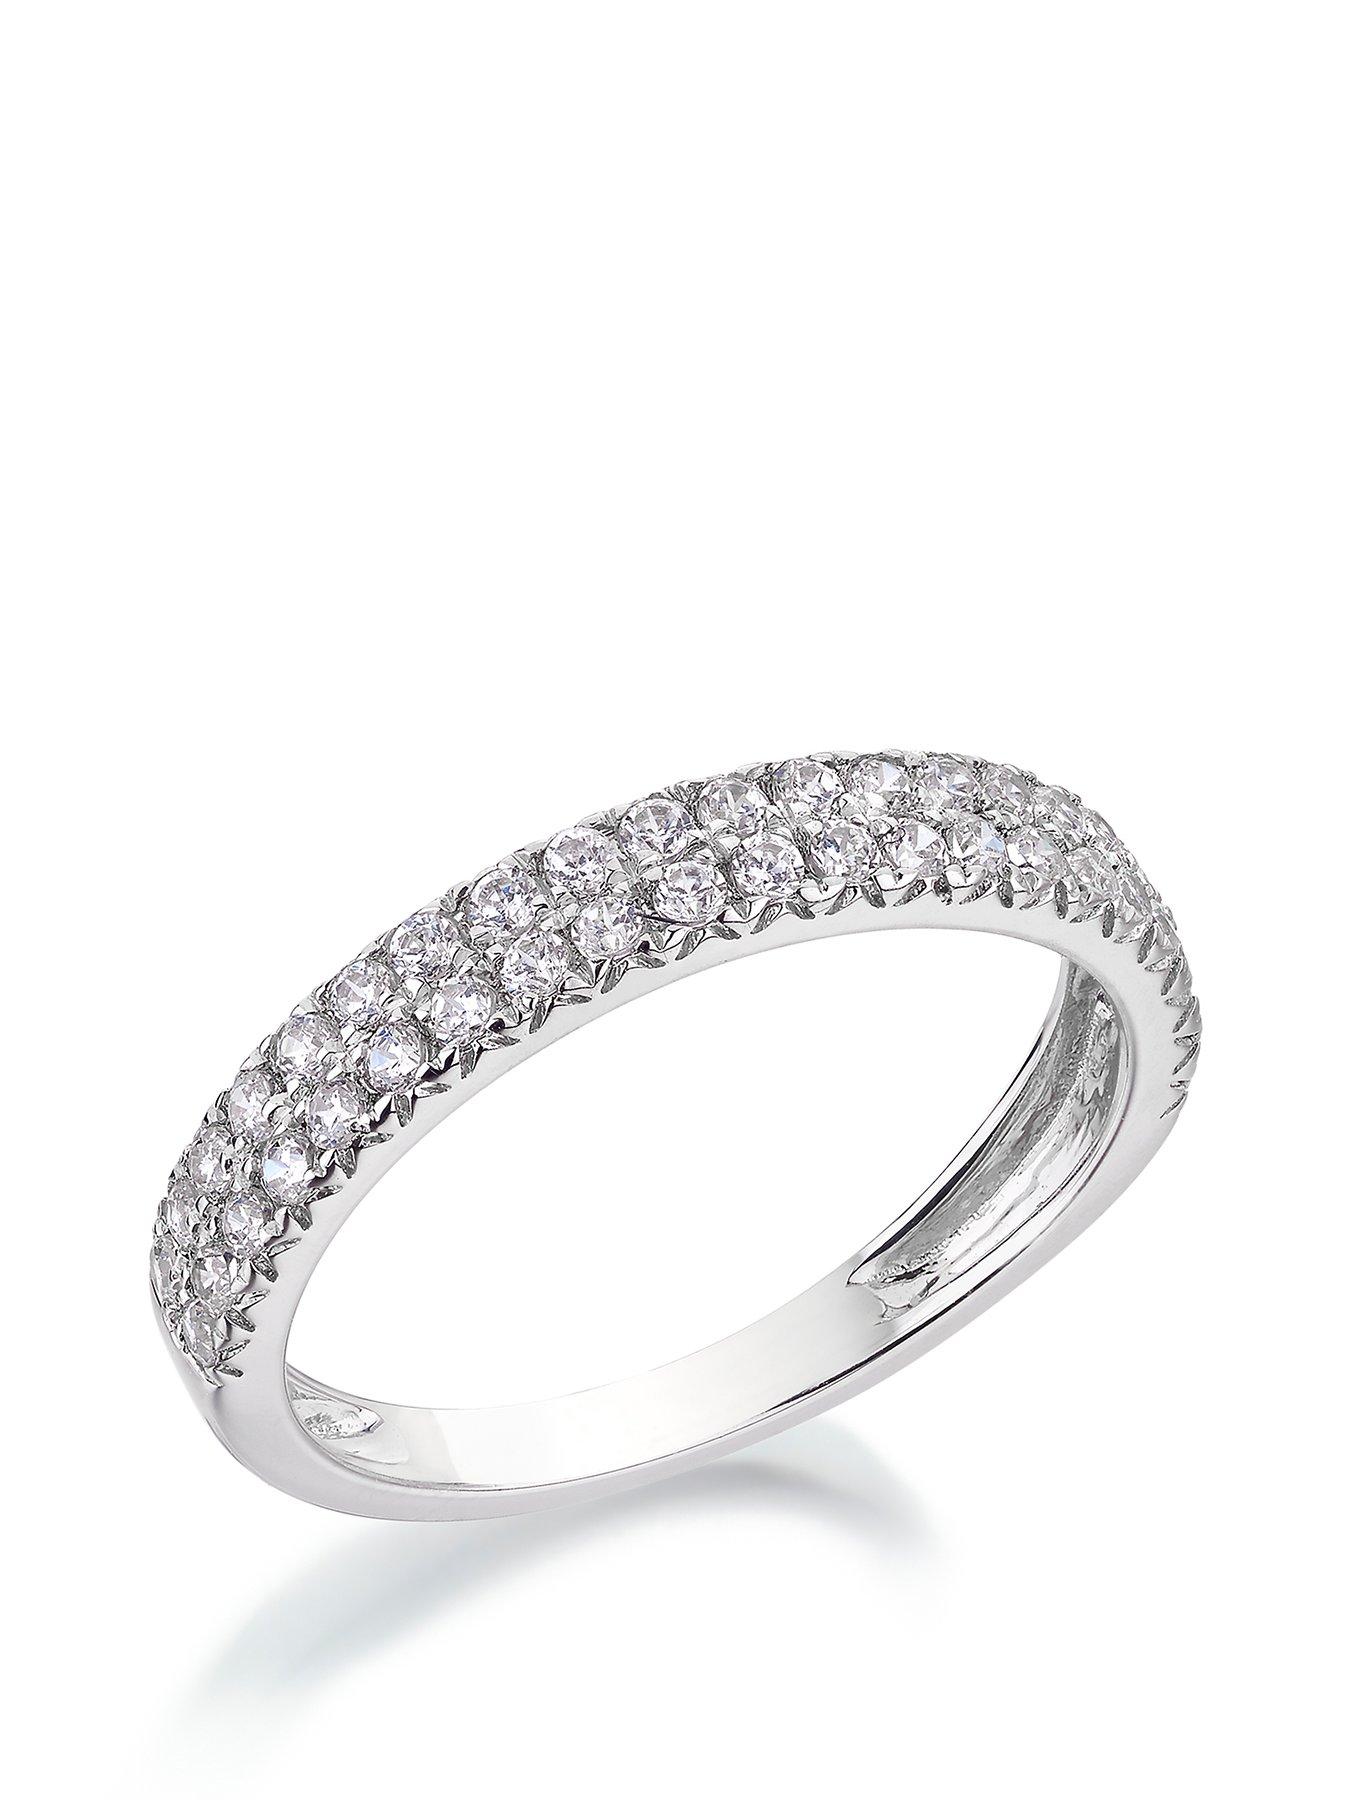 ELIZABETH - 1.80CT ANTIQUE OLD MINE CUT DIAMOND ENGAGEMENT RING — CUSHLA  WHITING